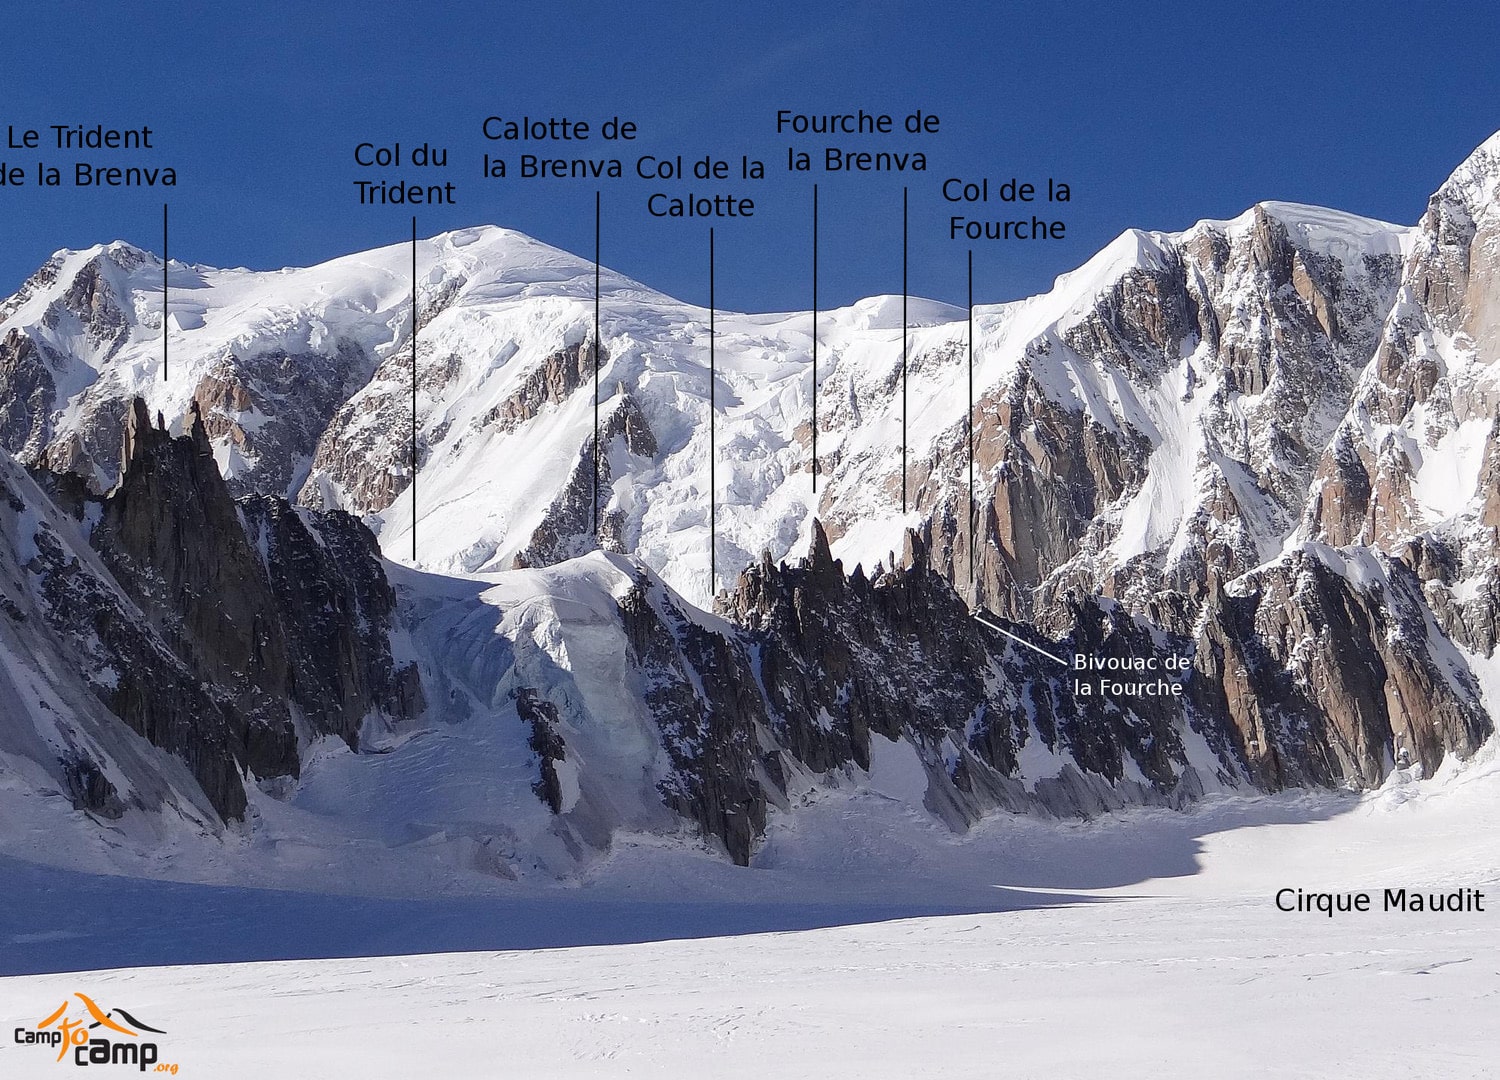 Massiccio del Monte Bianco